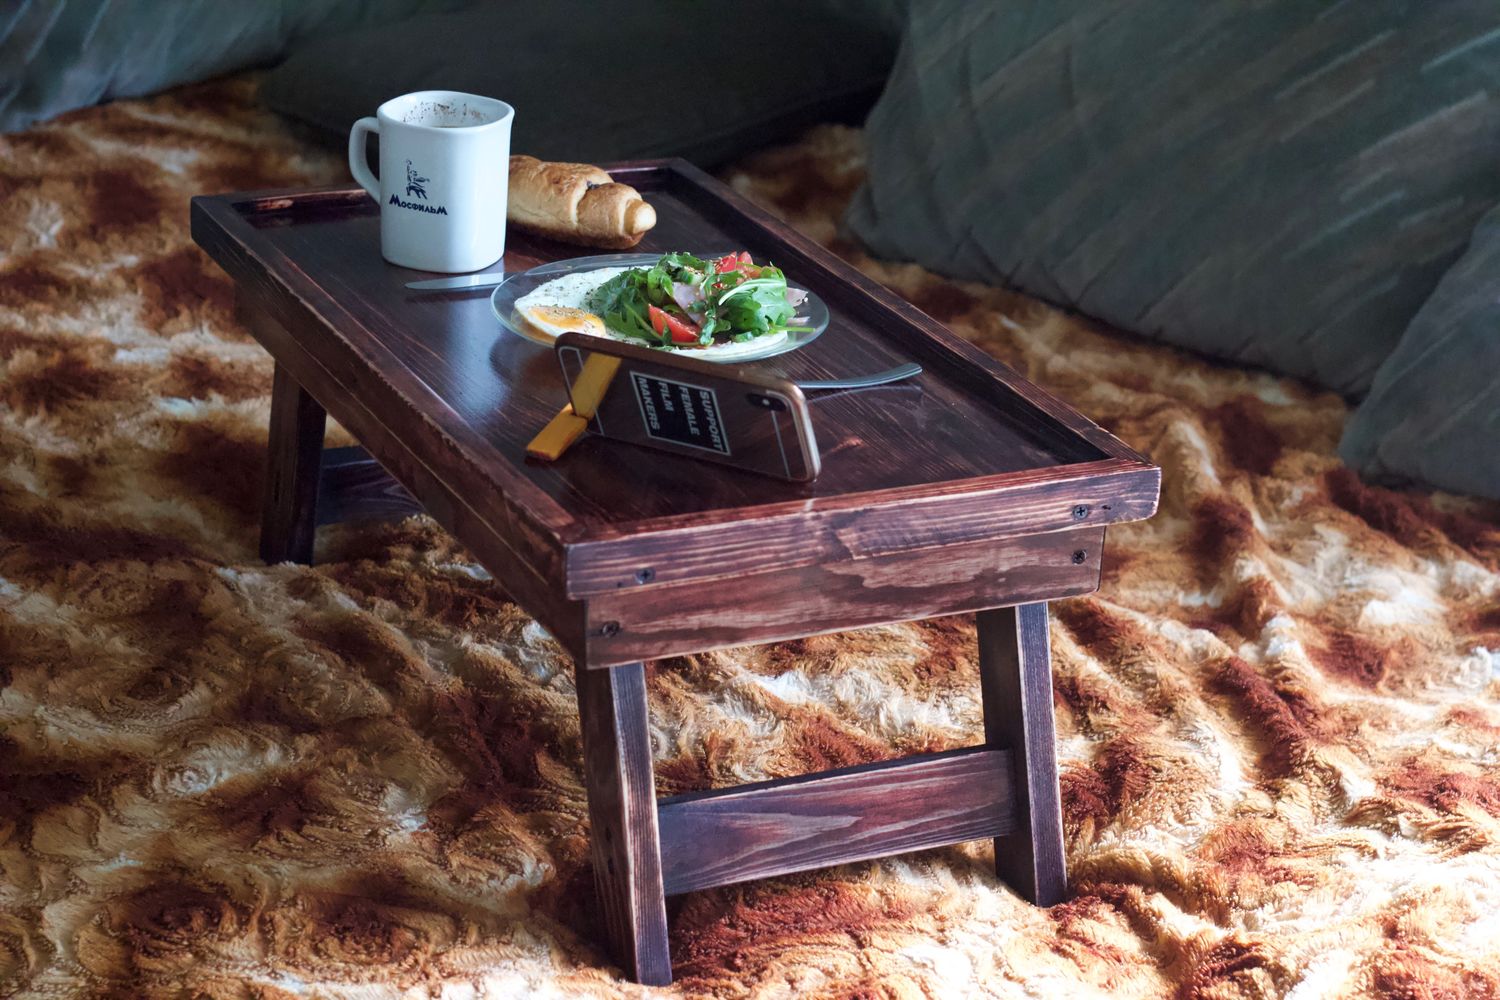 деревянный столик для завтрака в постель